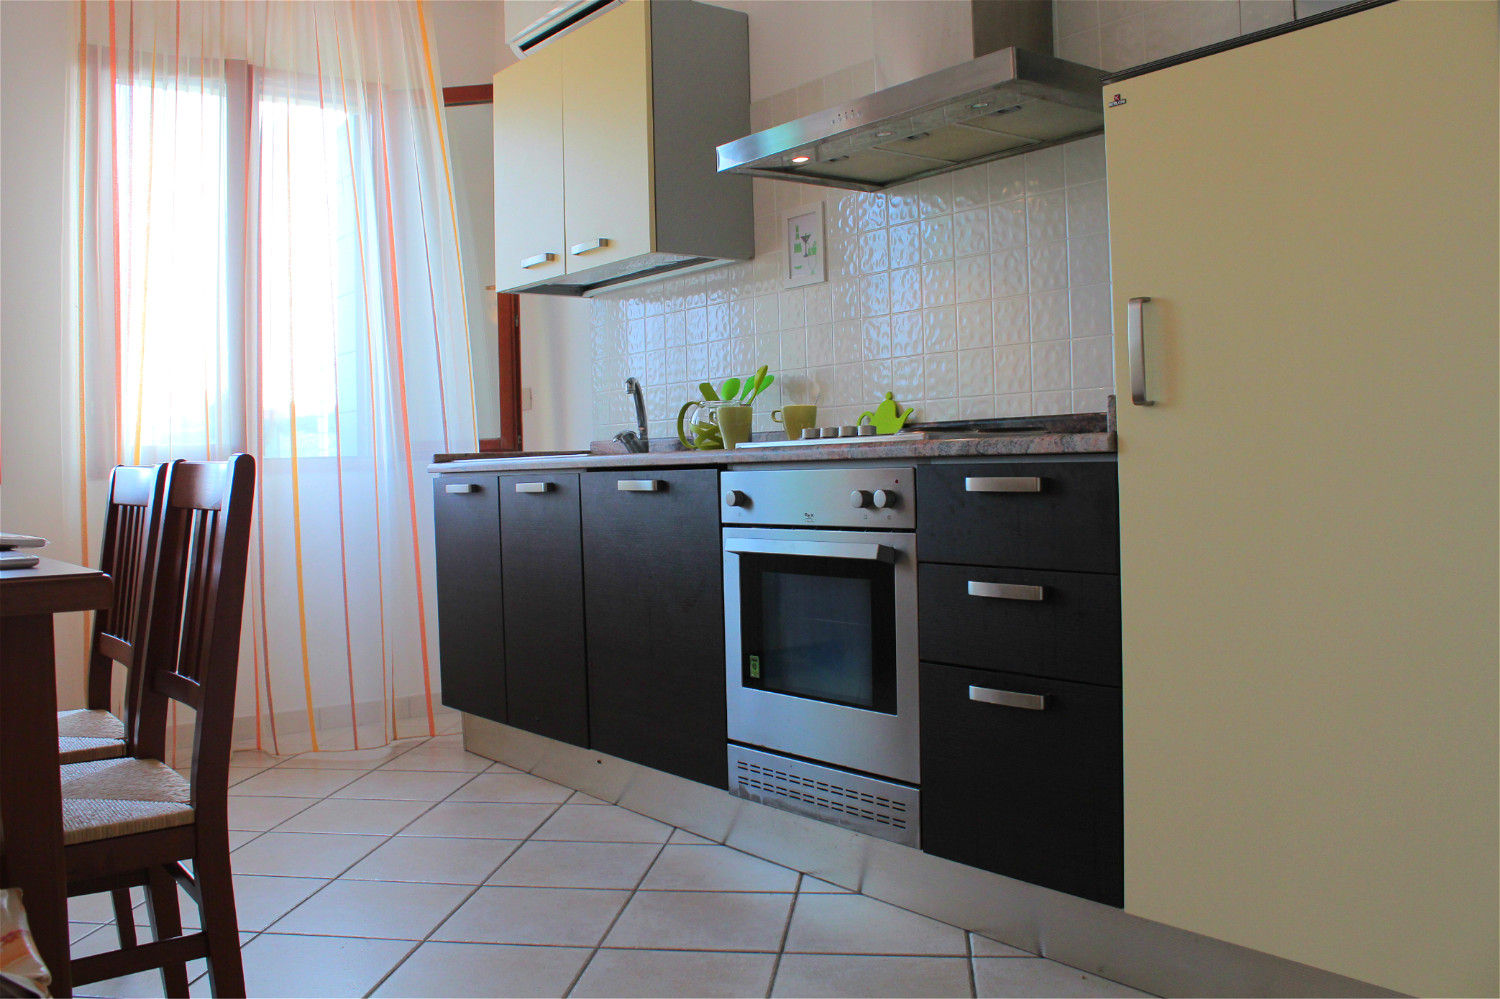 Villetta nell'isola di Pellestrina con obiettivo affitto estivo, Before & After Before & After Cucina moderna